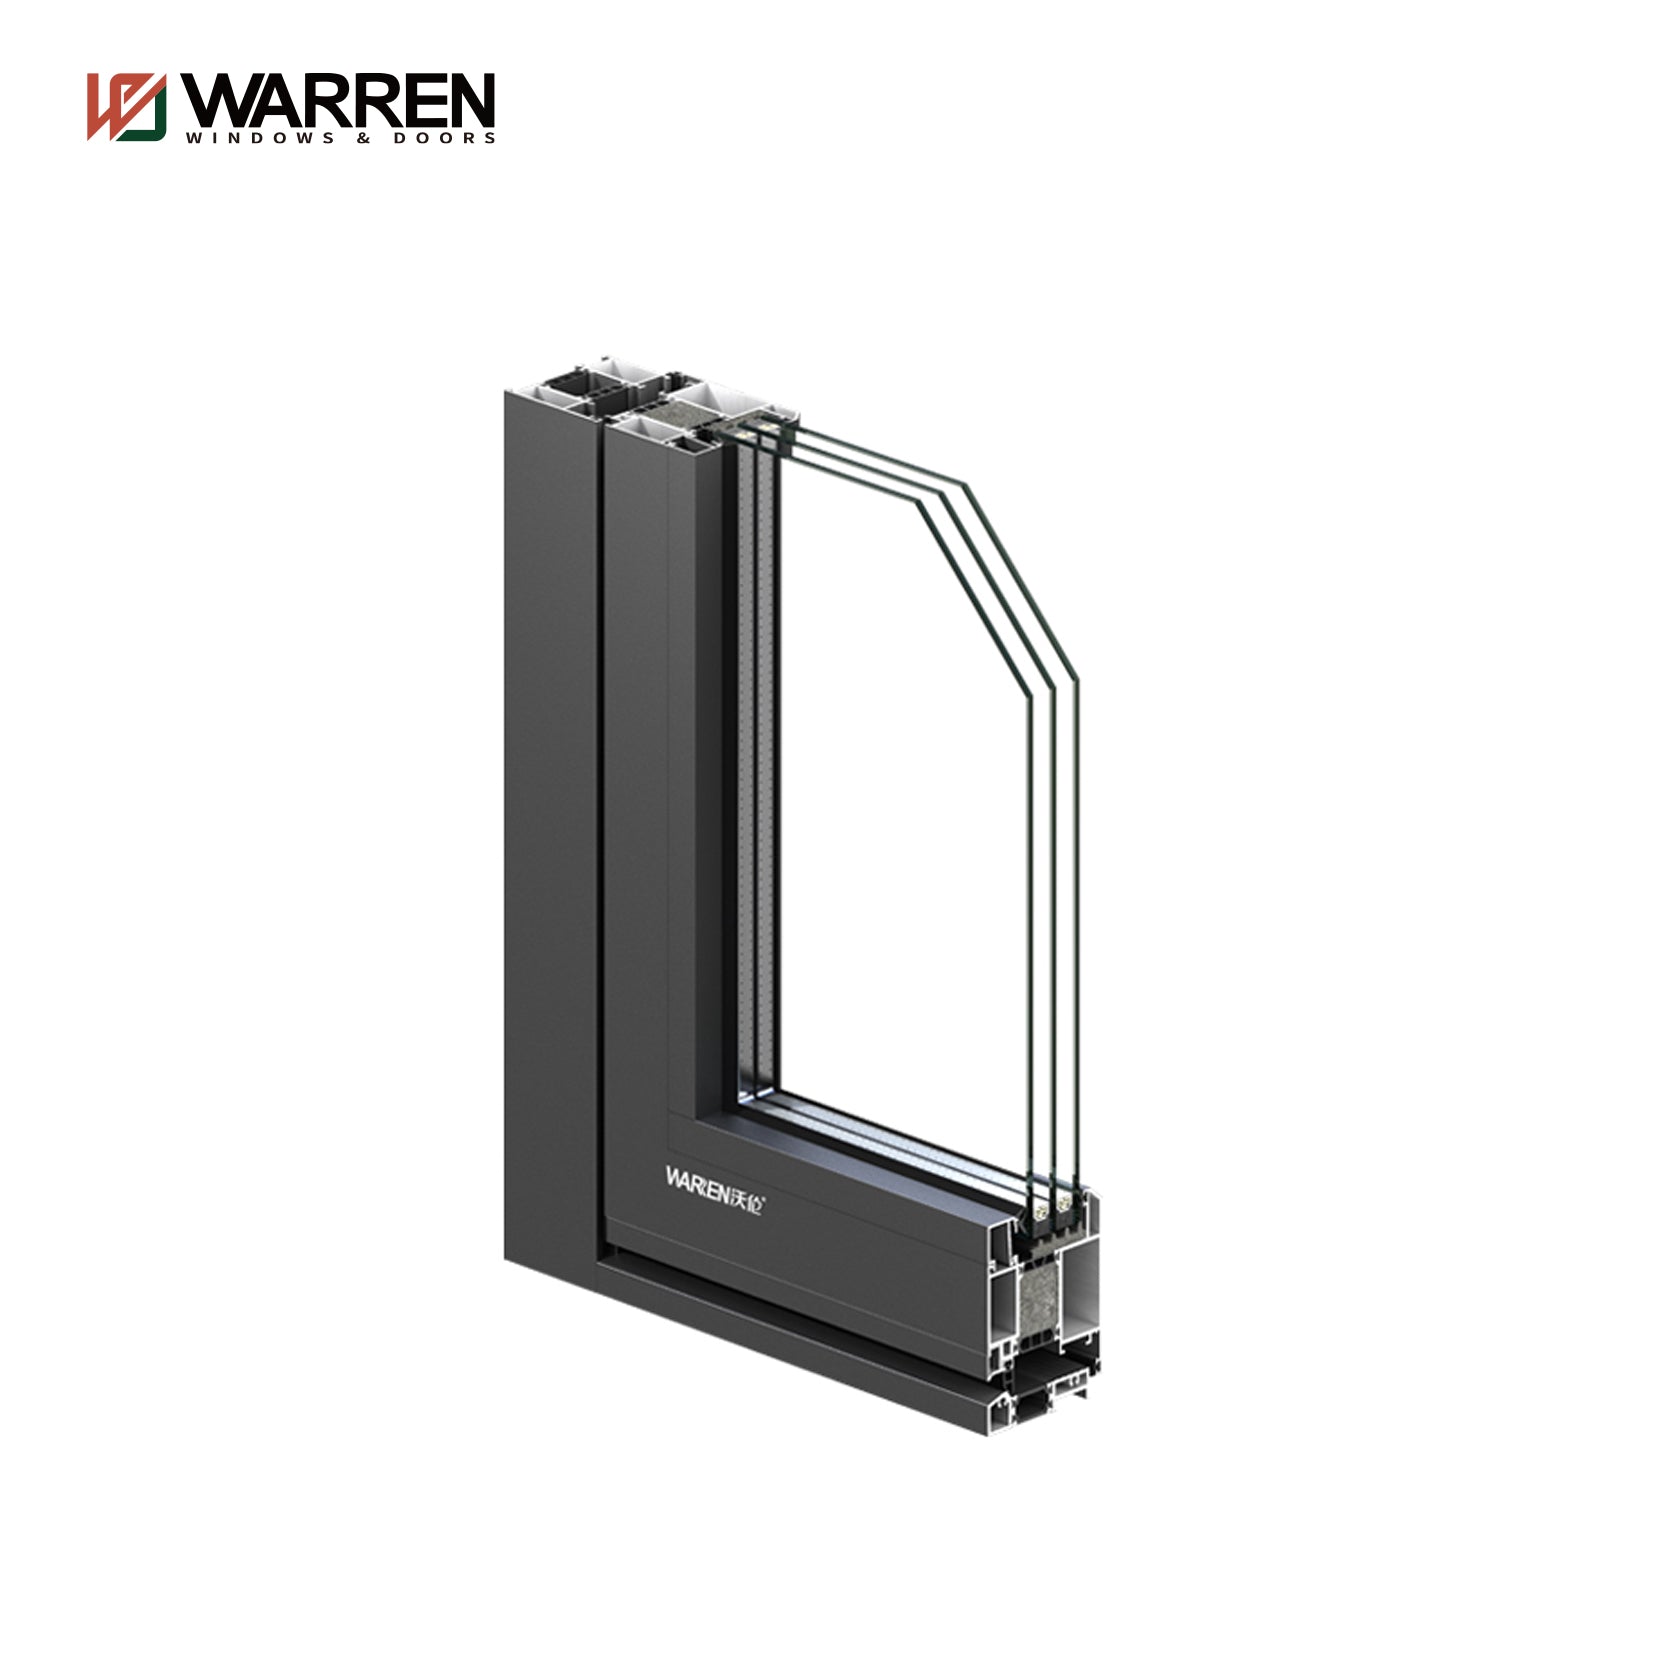 Warren 5ft Aluminium Internal French Doors With Black Glass Double Doors Interior